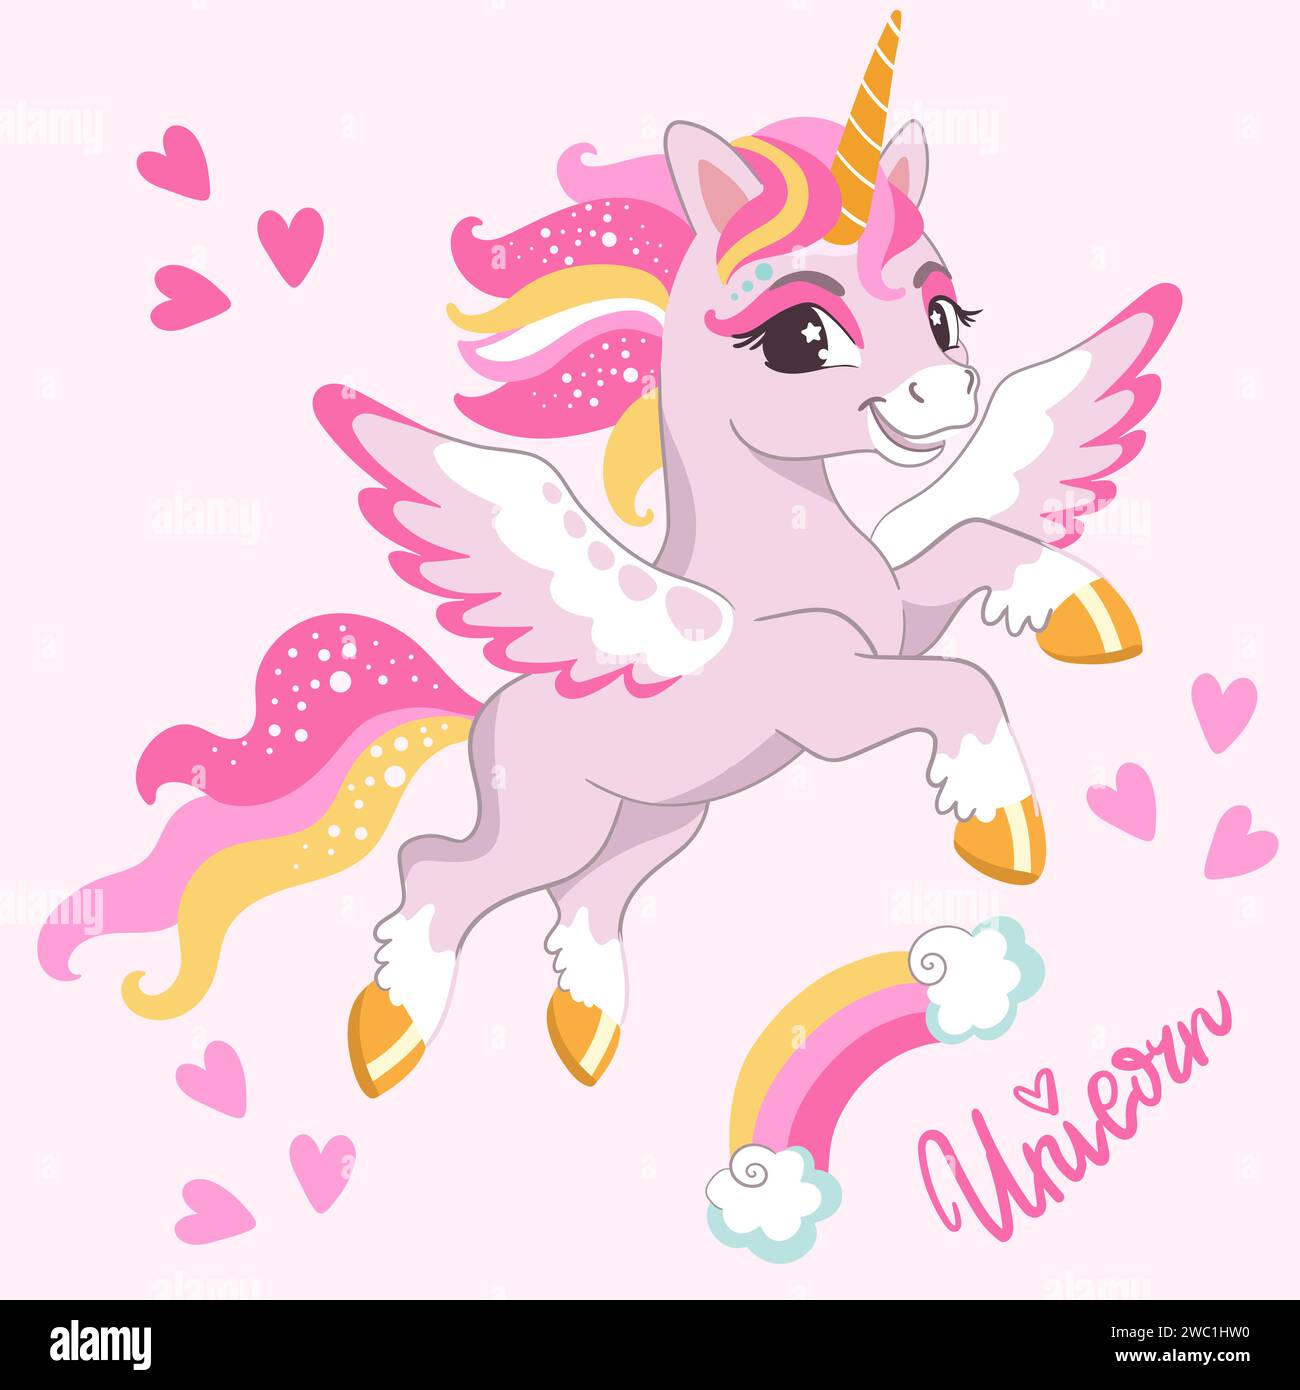 Simpatico e sorridente unicorno rosa con ali, arcobaleno e cuori. Illustrazione vettoriale in stile cartone animato per stampe e decorazioni, tessuti, souvenir, adesivi Illustrazione Vettoriale